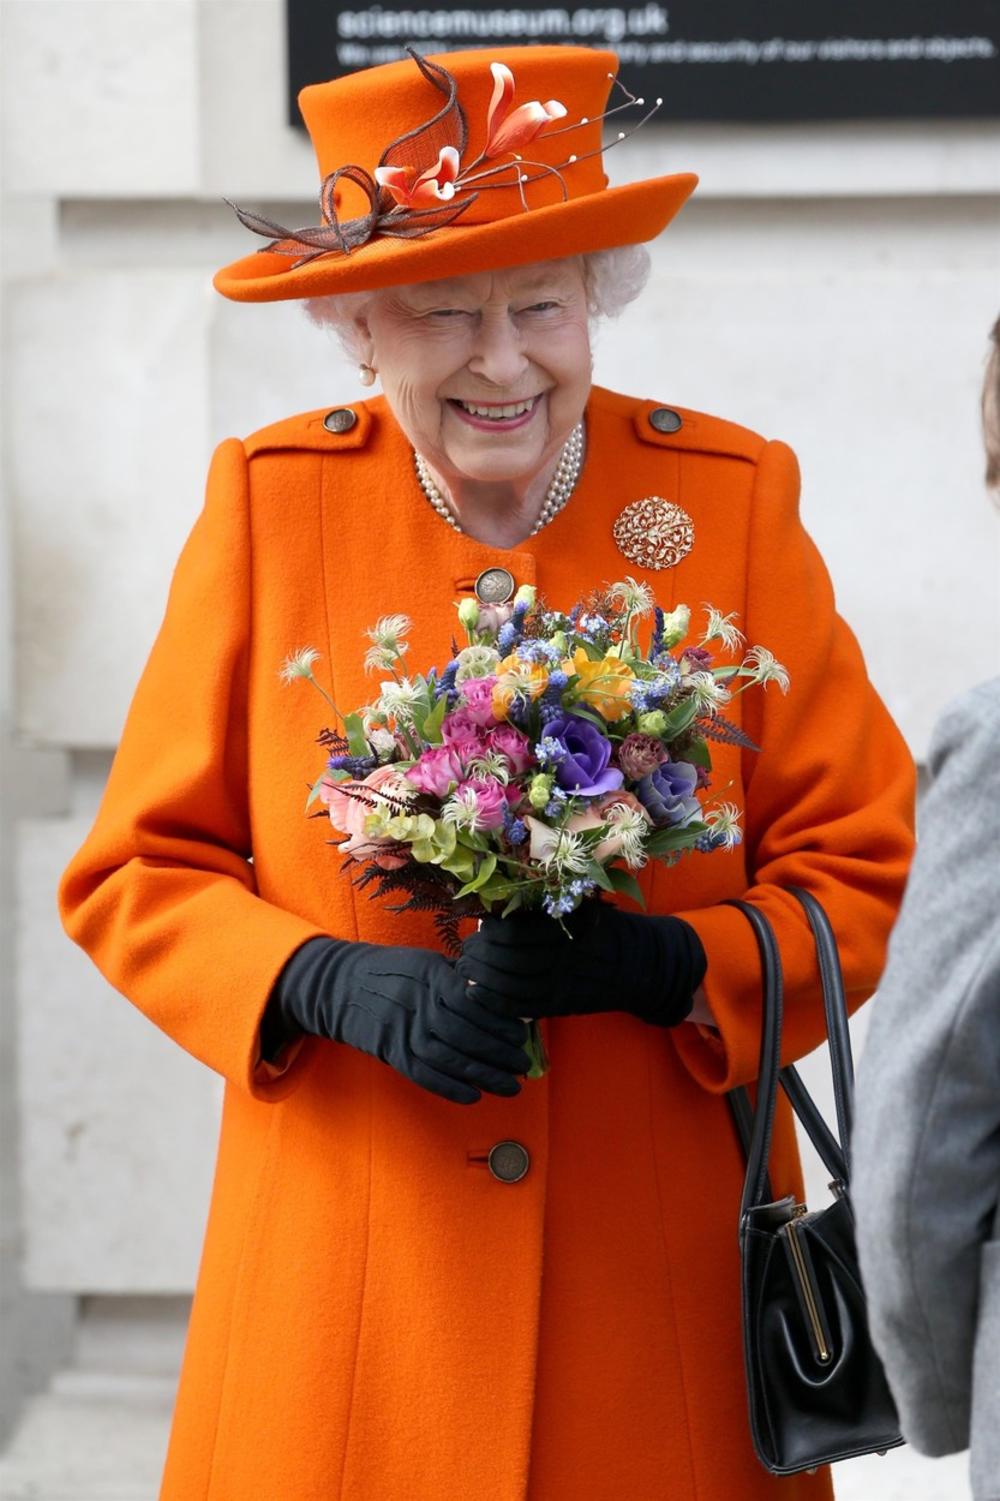 <p>Razgovor telefonom s kraljicom Velike Britanije je velika čast i retkost čak i za članove njene porodice, a ni naslednici njenog trona ne mogu da pohvale time da s njom mogu da proćaskaju kad god im je volja — to je rezervisano samo za dve osobe u životu kraljice Elizabete II</p>